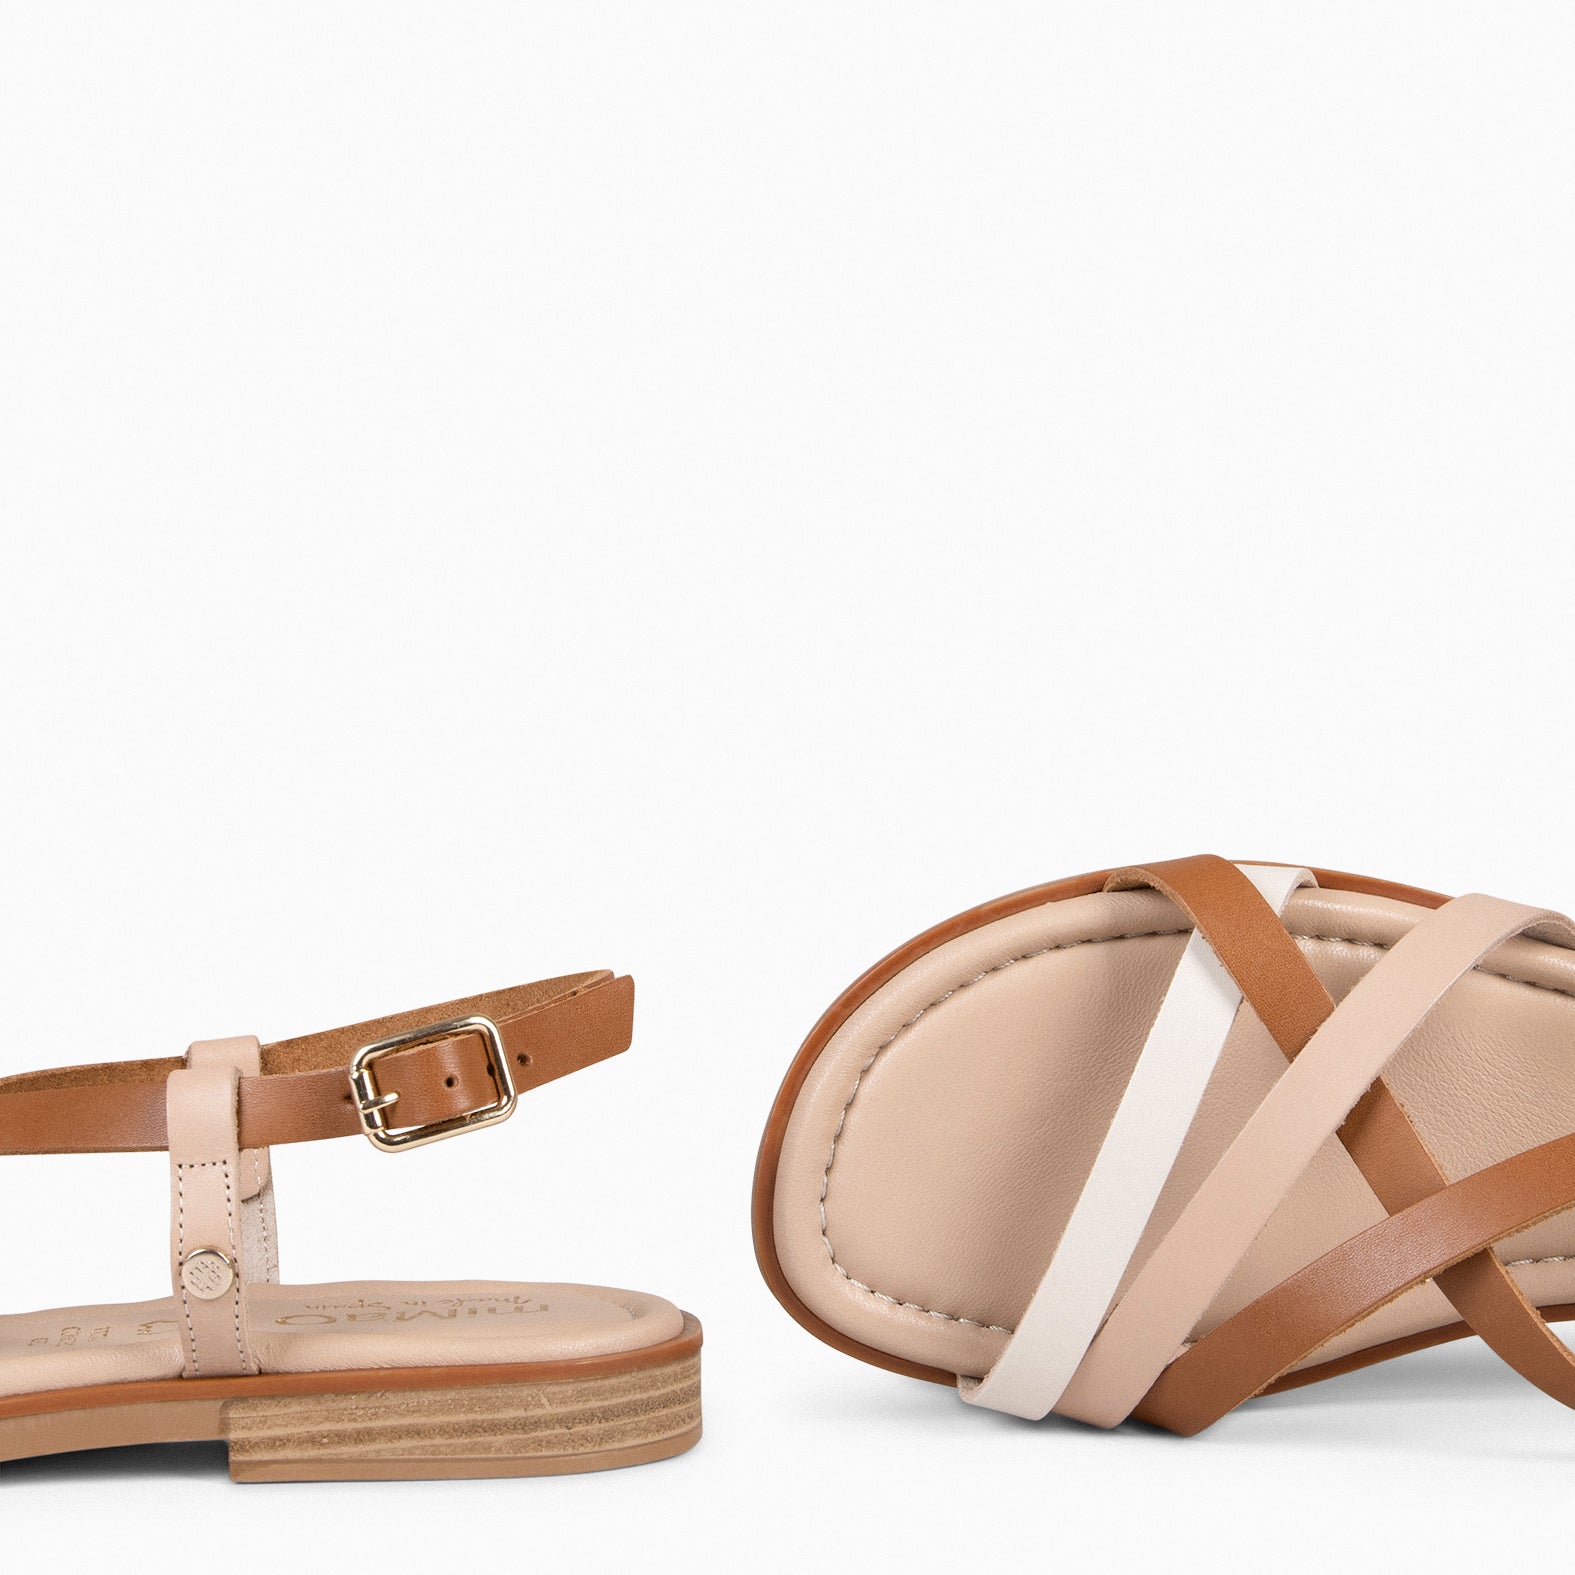 ELVA - MULTI Elegant Flat Sandals